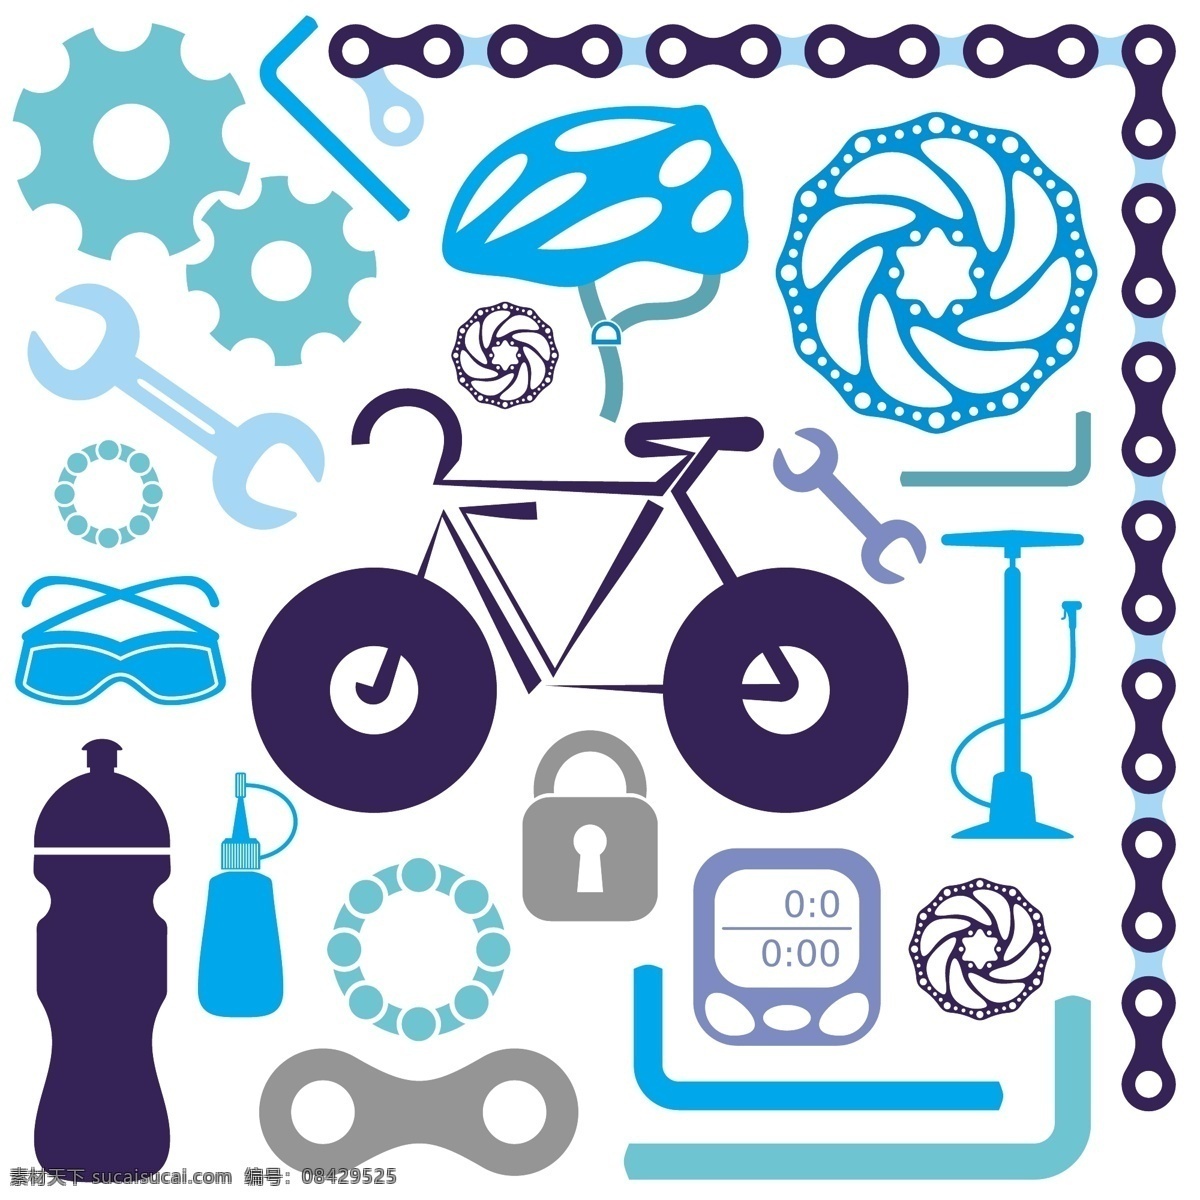 体育 运动 sport 体育图标 体育标志 运动图标 运动标志 体育运动 体育icon 体育logo 运动icon 运动logo 自行车 自行运动 自行车元素 标志图标 其他图标